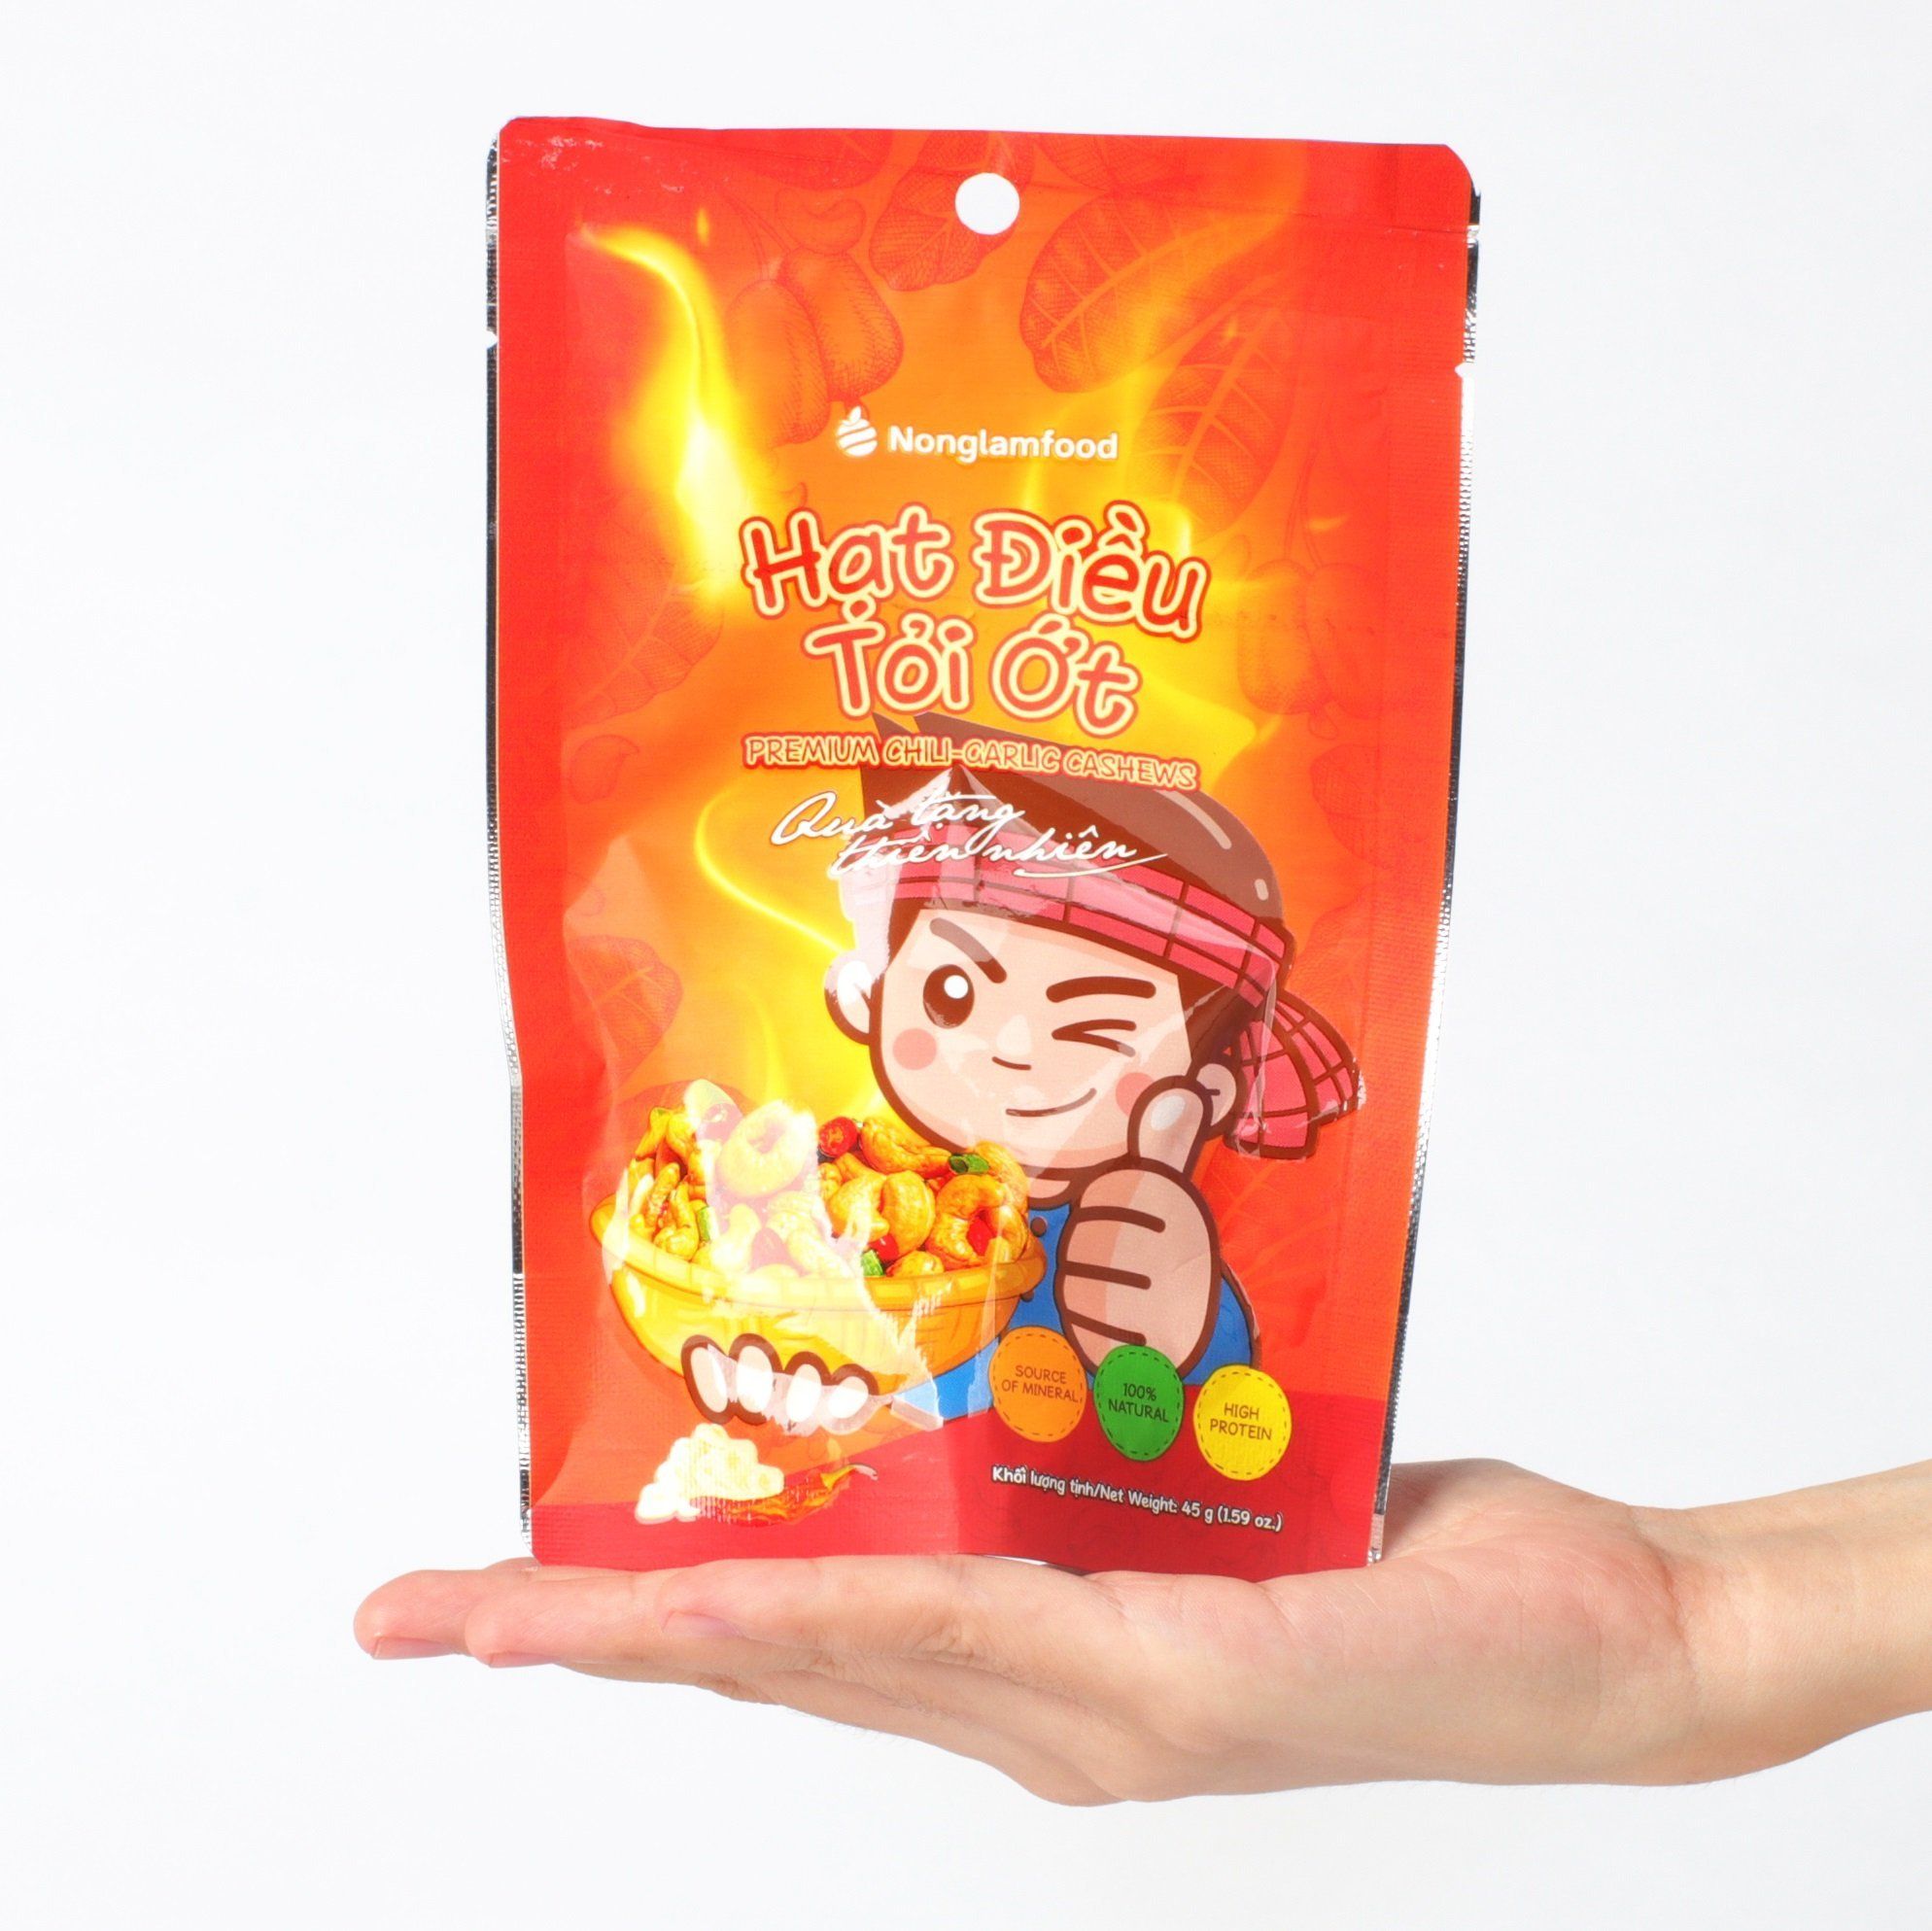 Hạt điều tỏi ớt Nonglamfood túi 45g | Premium chili-garlic cashews